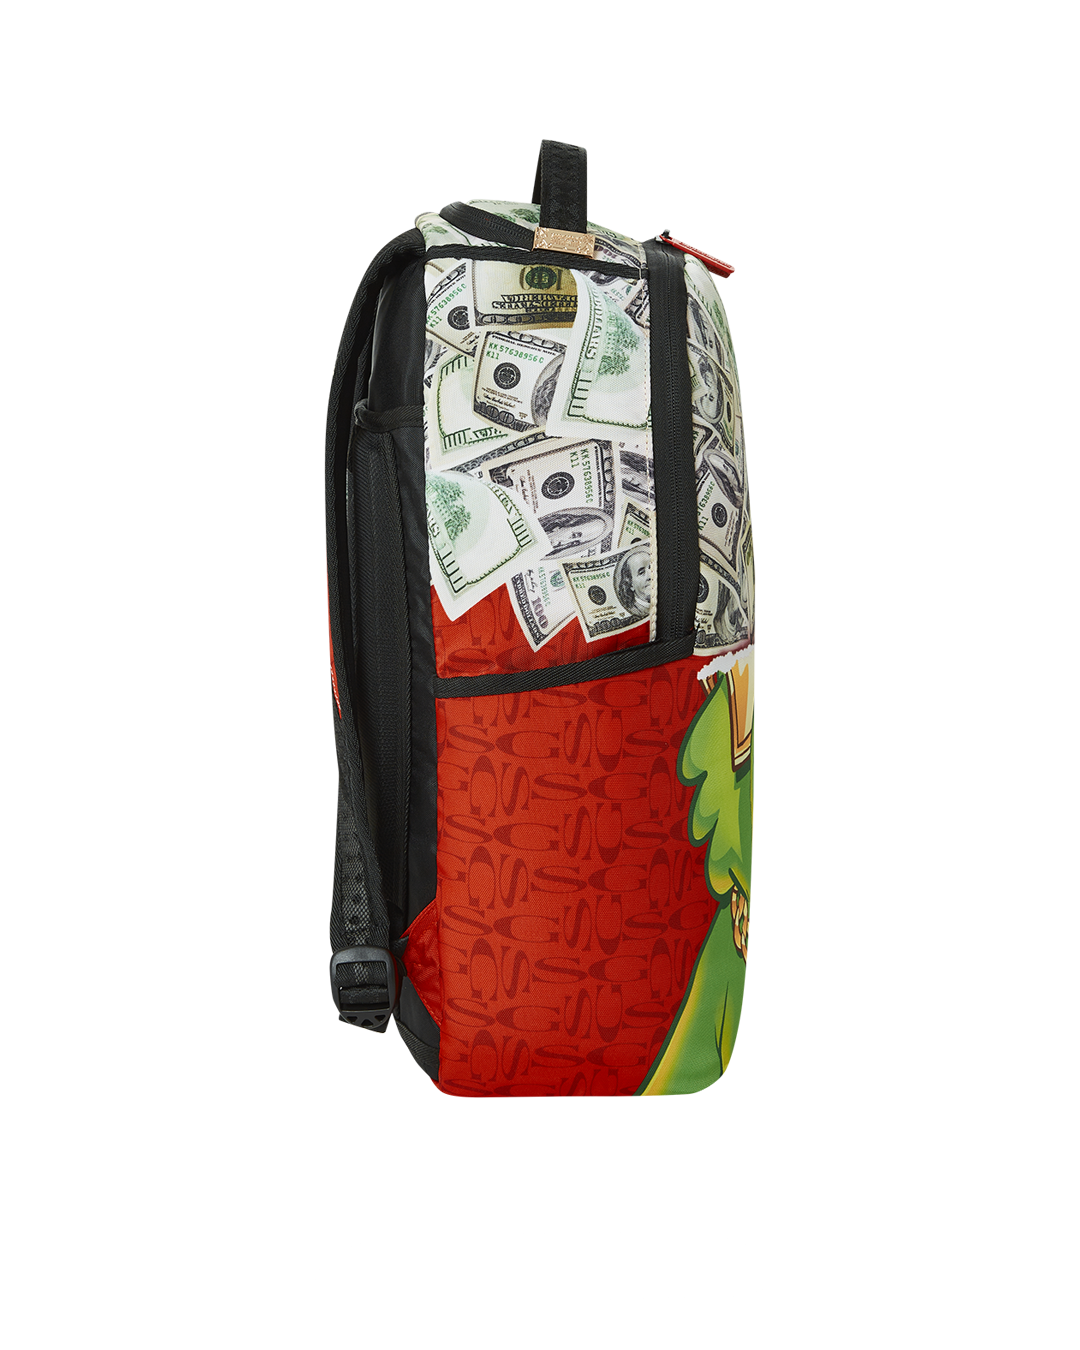 Sprayground moneybear steady trippin backpack